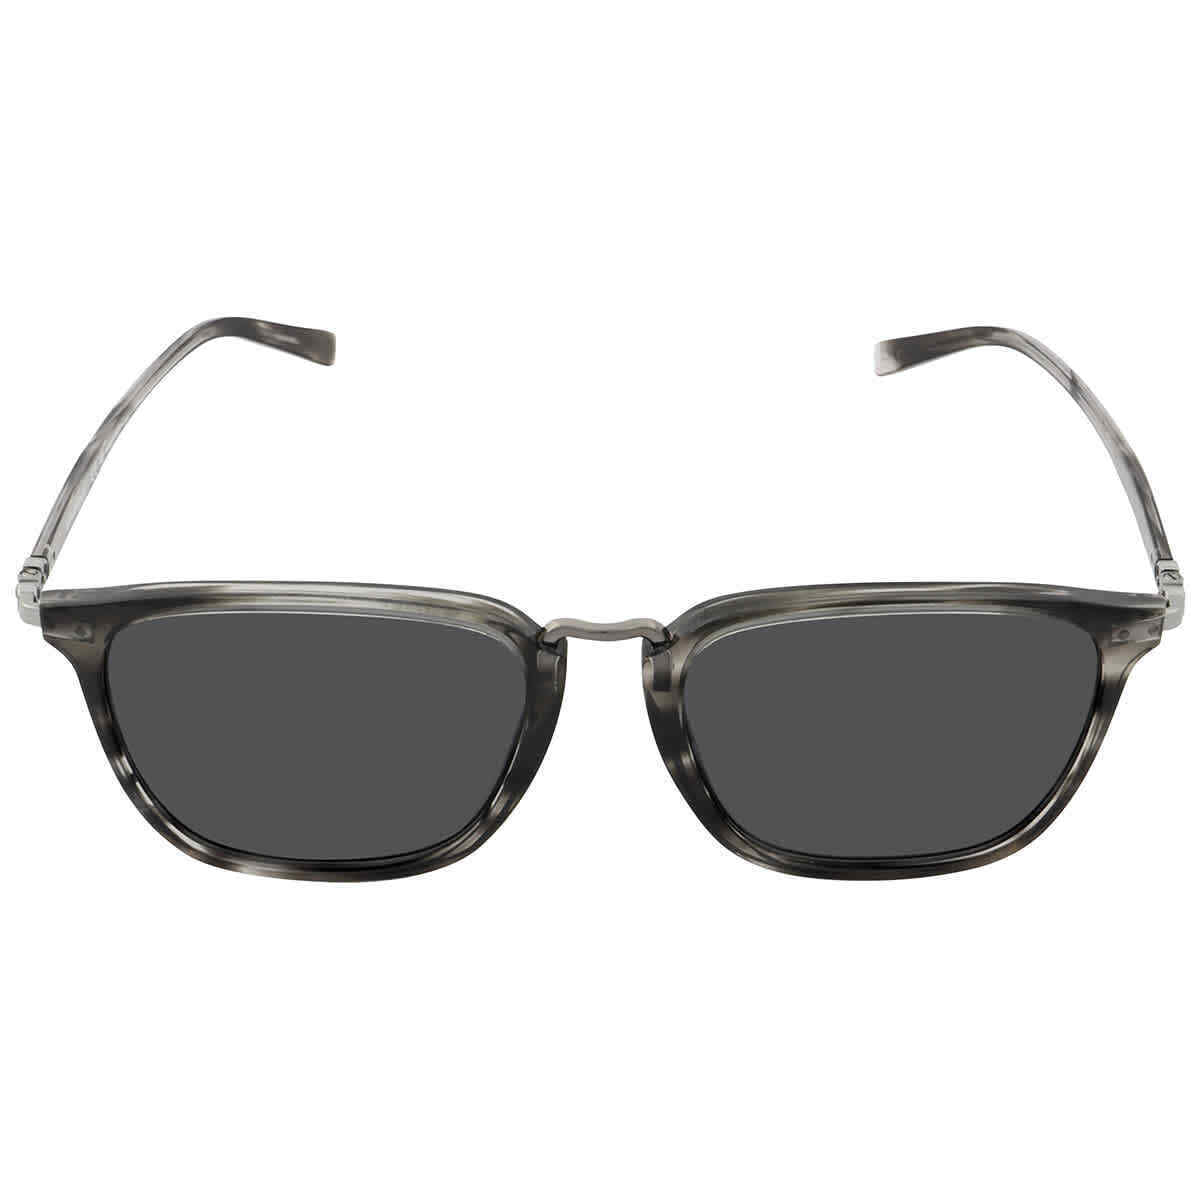 Salvatore Ferragamo SF910S-003 54mm New Sunglasses